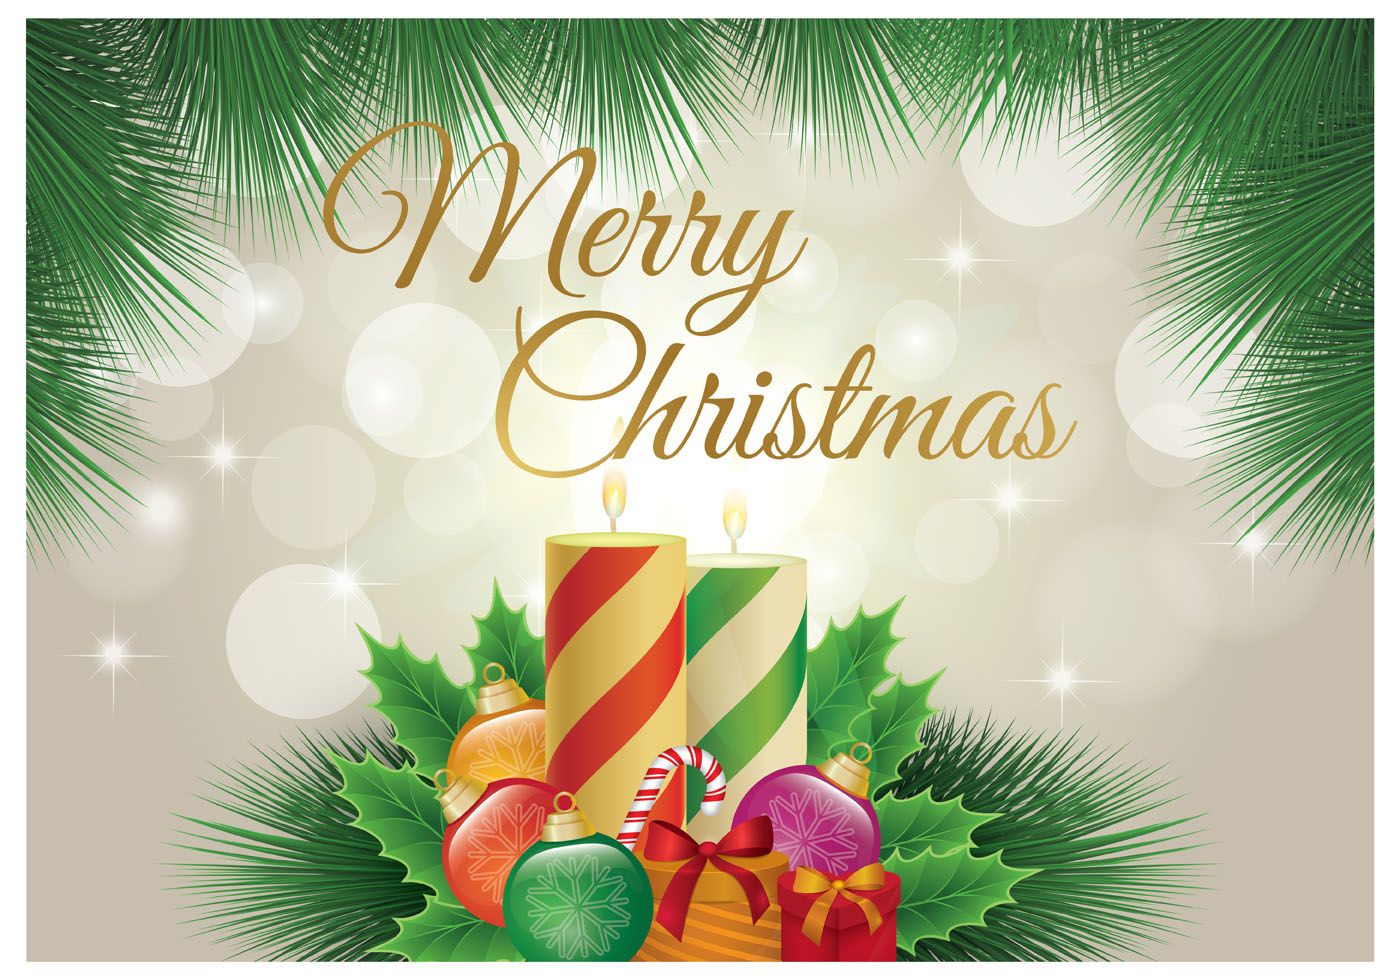 Merry Christmas Wallpaper Free Vectors, Clipart Graphics & Vector Art